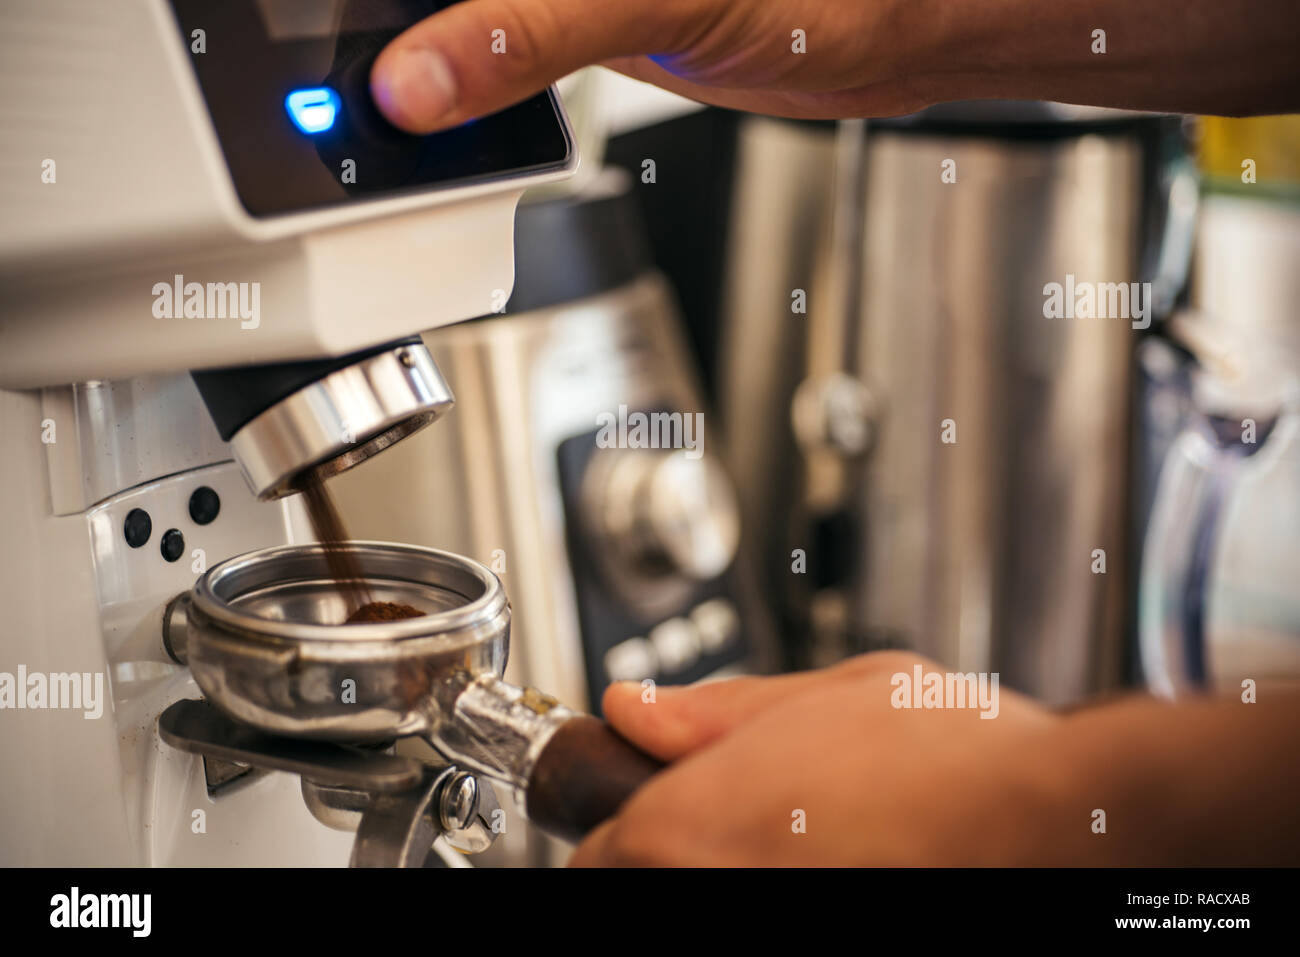 https://c8.alamy.com/compes/racxab/comenzando-con-el-mejor-molinillo-de-cafe-barista-hace-espresso-en-el-cafe-barista-moler-con-maquina-de-cafe-molinillo-de-cafe-moliendo-granos-tostados-racxab.jpg